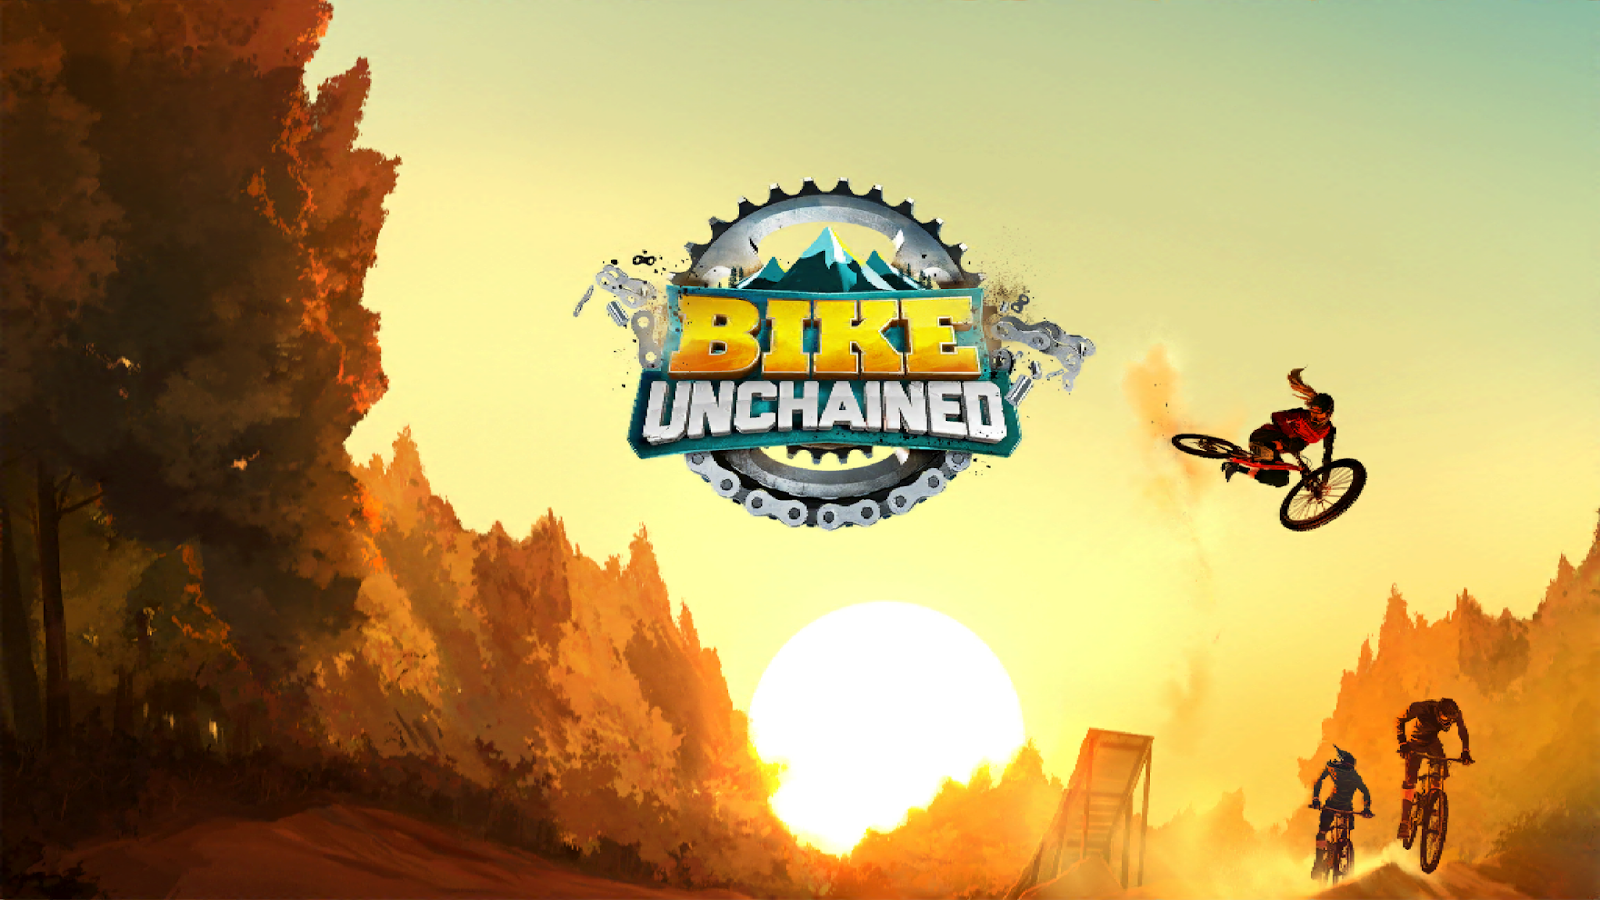 Dirt Bike Unchained. Mr. Unchained. Bike unchained